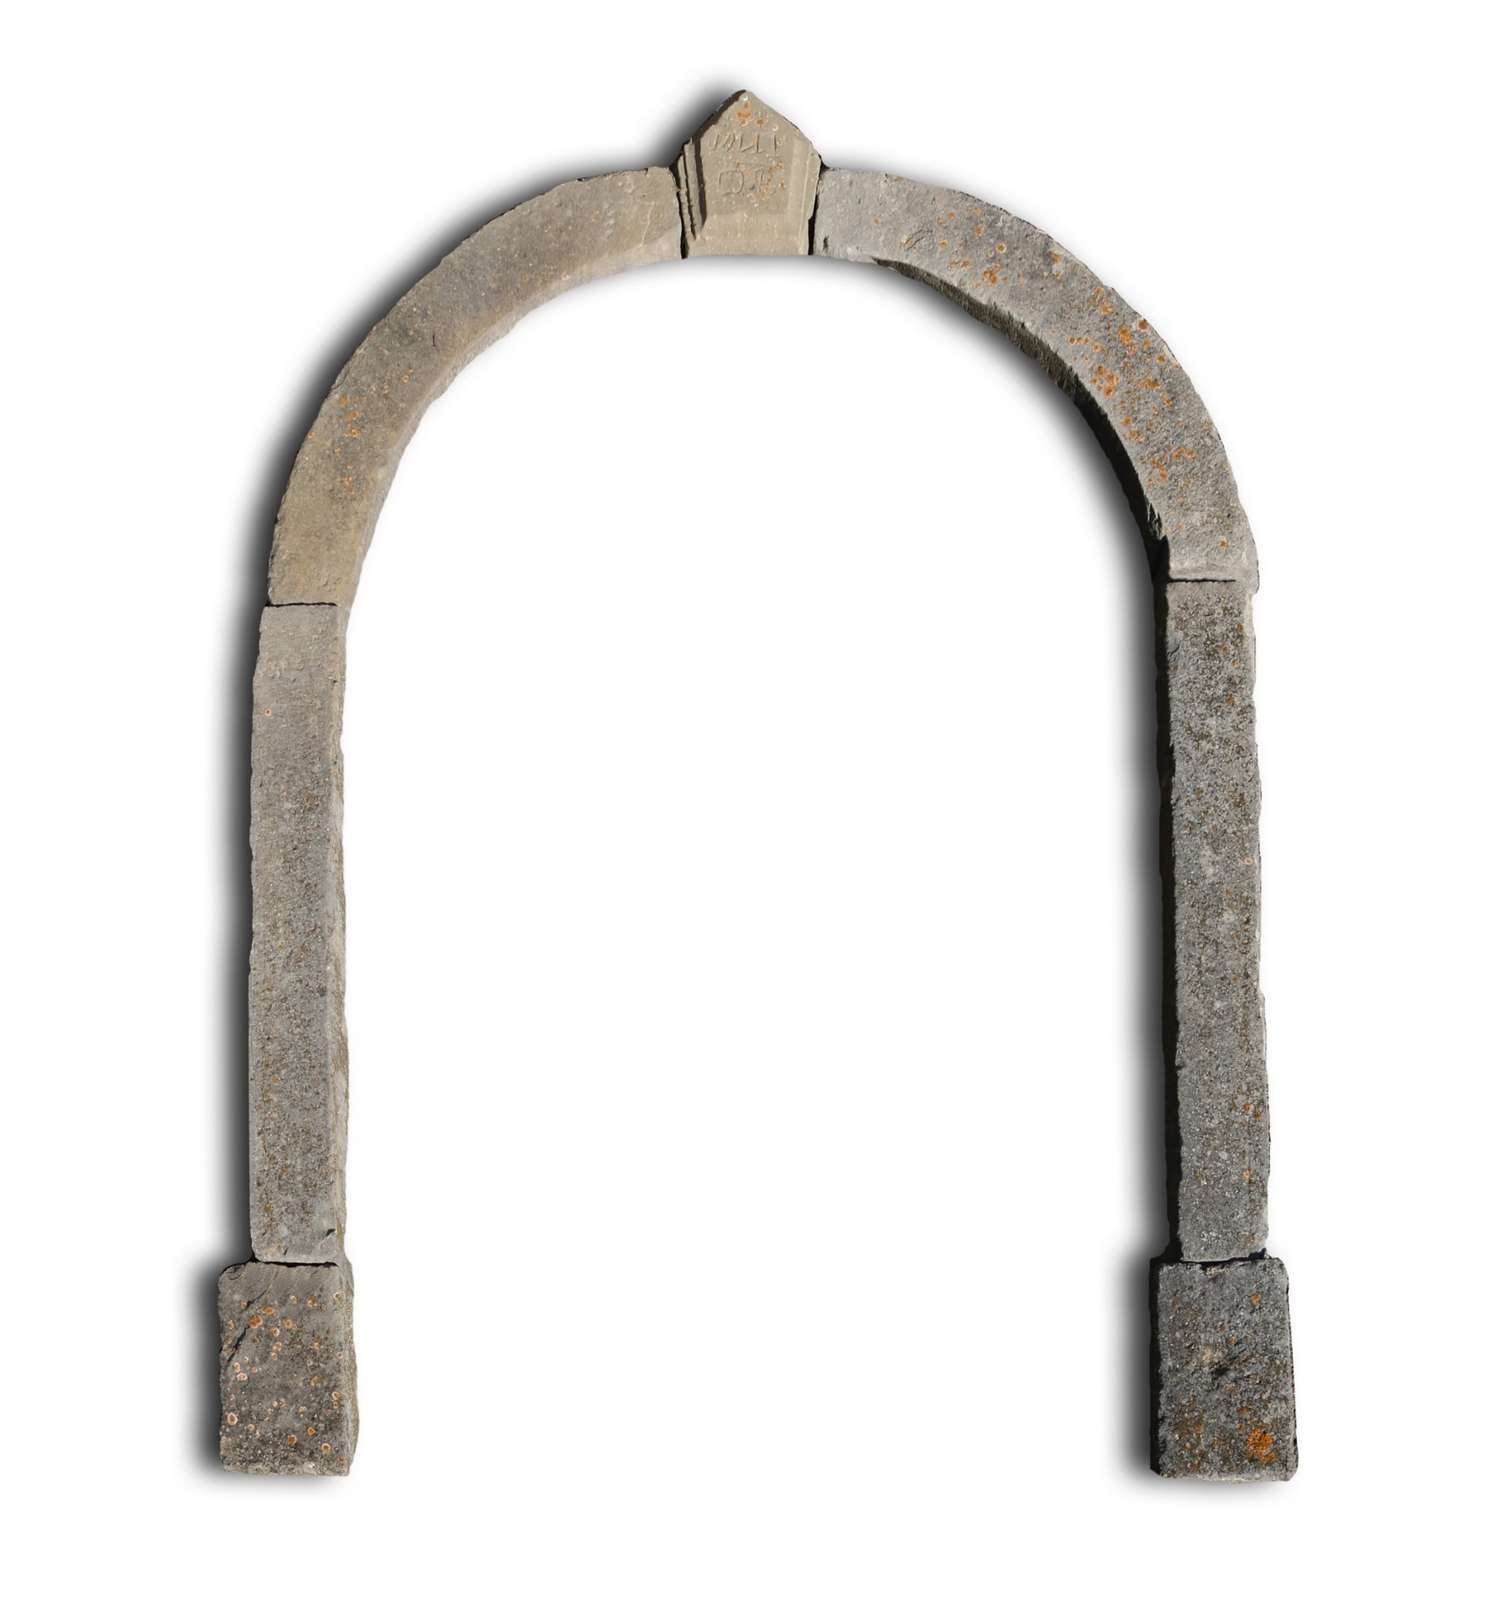 Antico portale in pietra. Datato 1891. - Portali, Finestre e Cornici - Architettura - Prodotti - Antichità Fiorillo